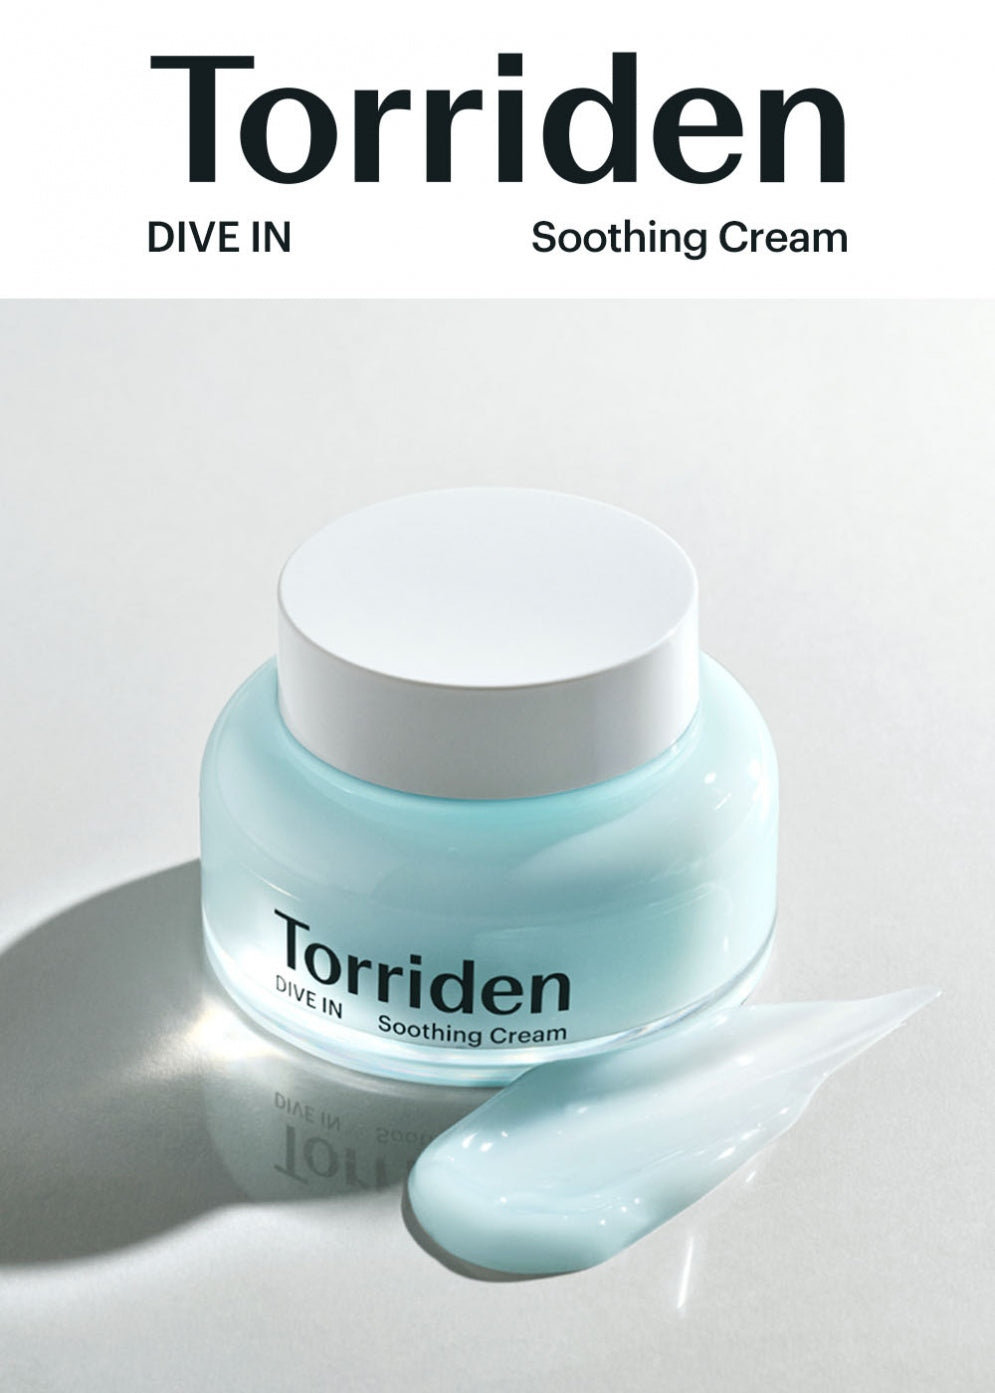 Torriden_DIVE IN Soothing Cream 100ml_1